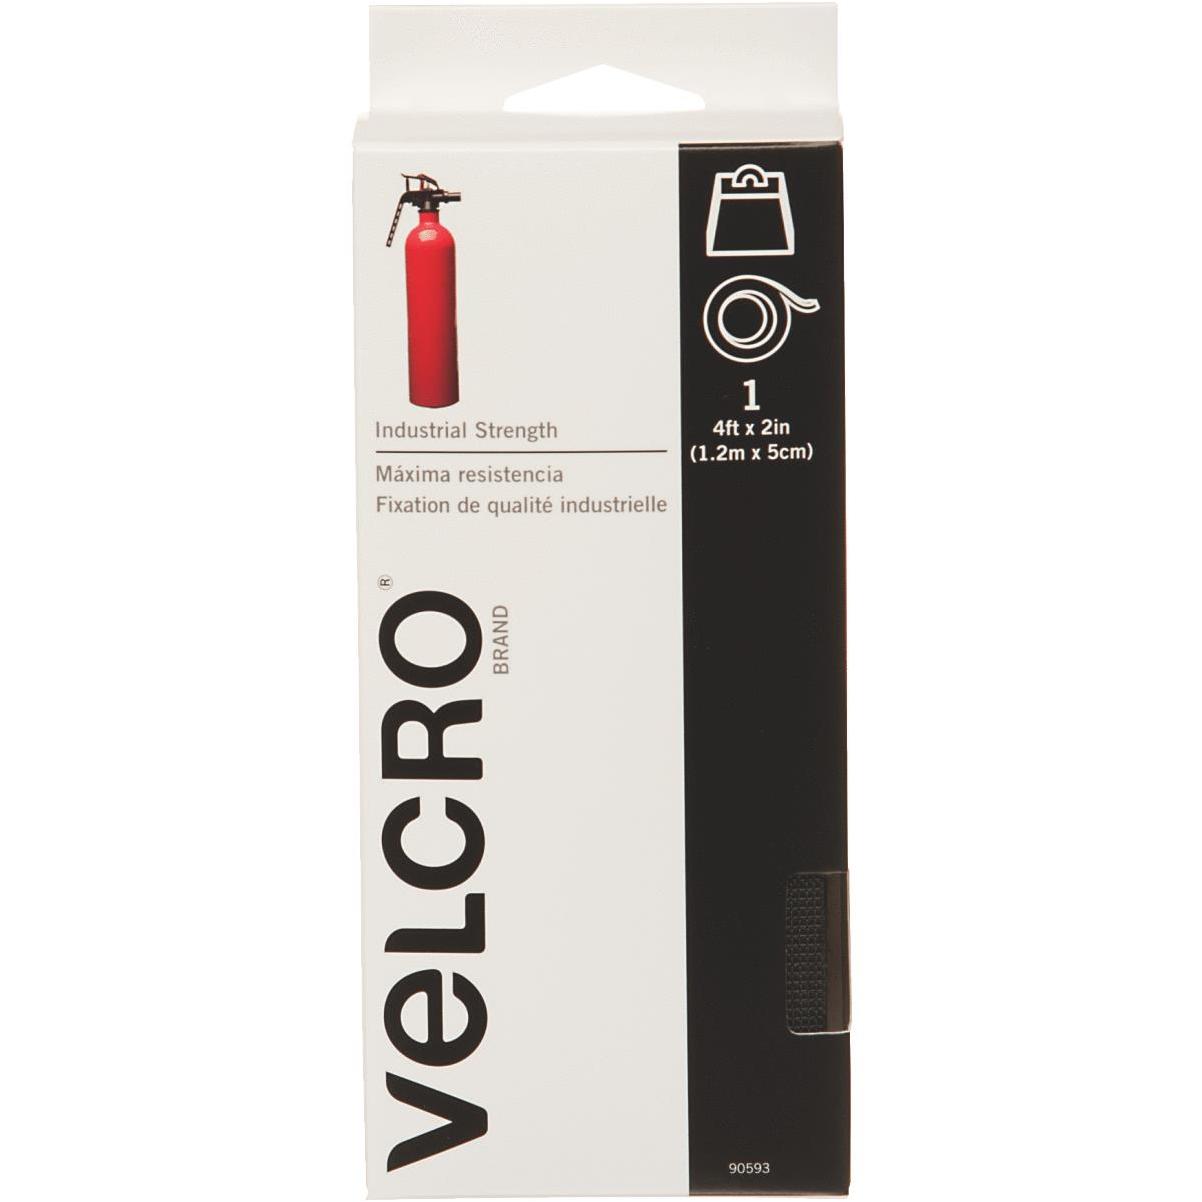 VELCRO Brand ONE-WRAP Ties 23in x 7/8in Ties, Black - 3 ct.